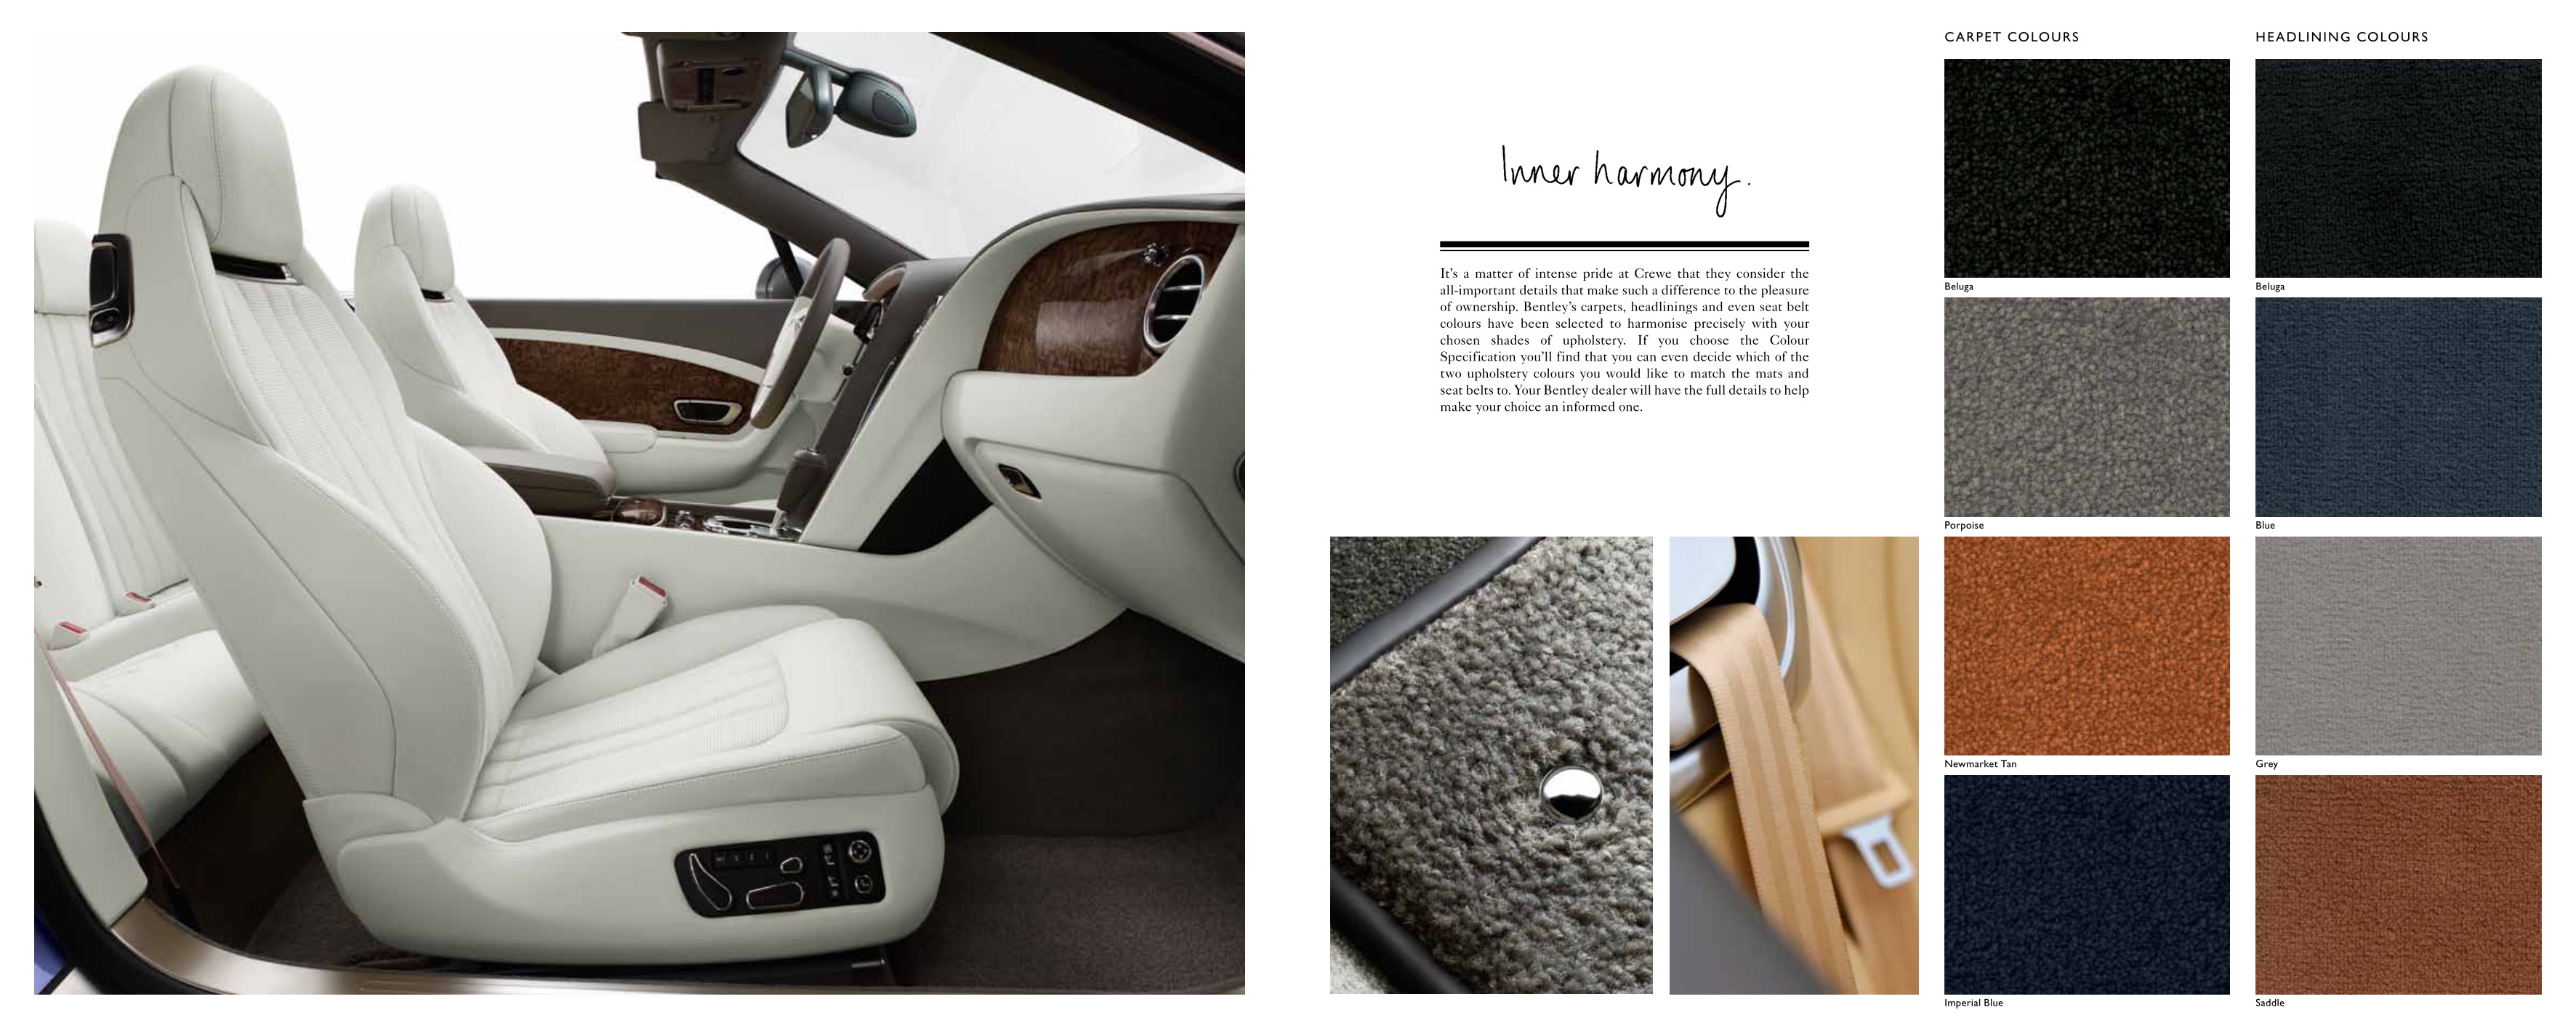 2012 Bentley Continental Brochure Page 31